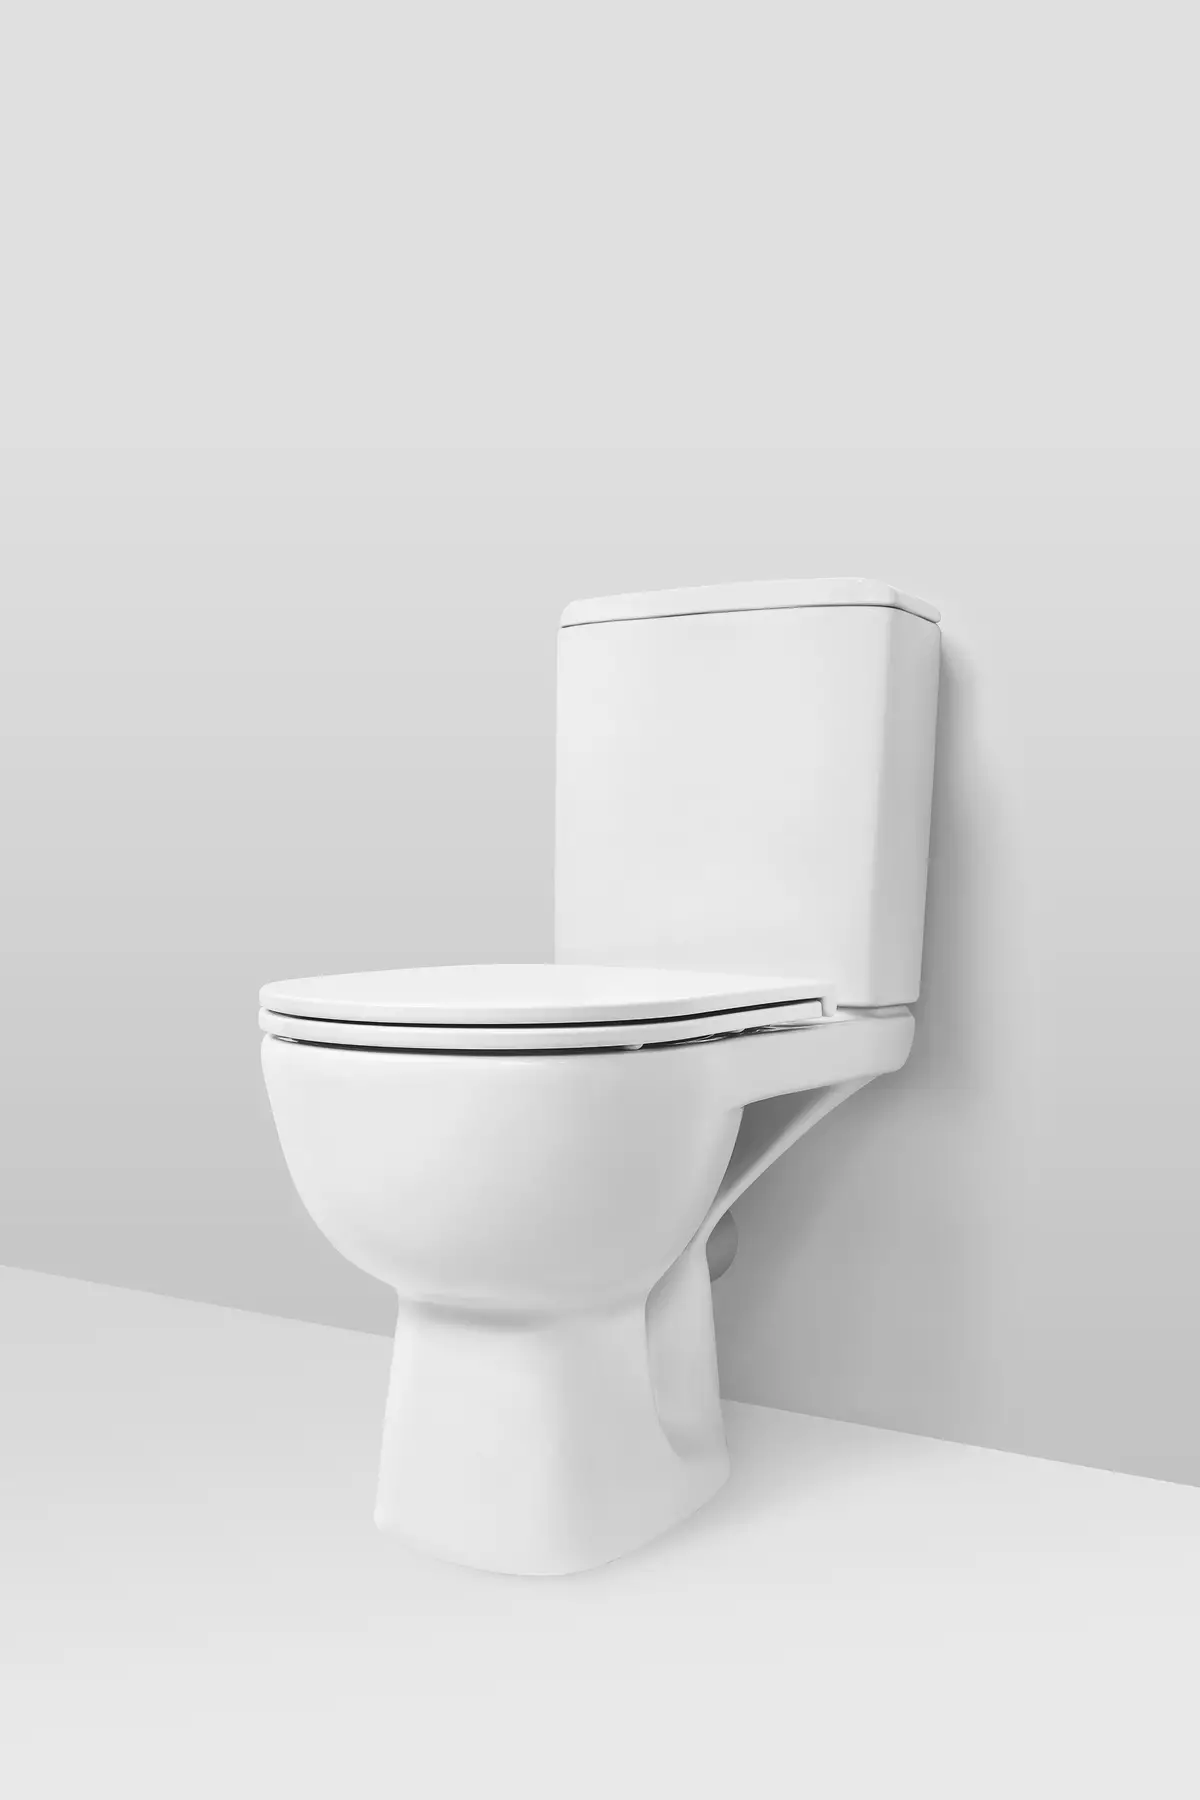 Am.PM Toaletter: Beskrivning av suspension toaletthopp och modeller av pärla kompakt, familjer som och awe, ande och hit, recensioner 10520_17